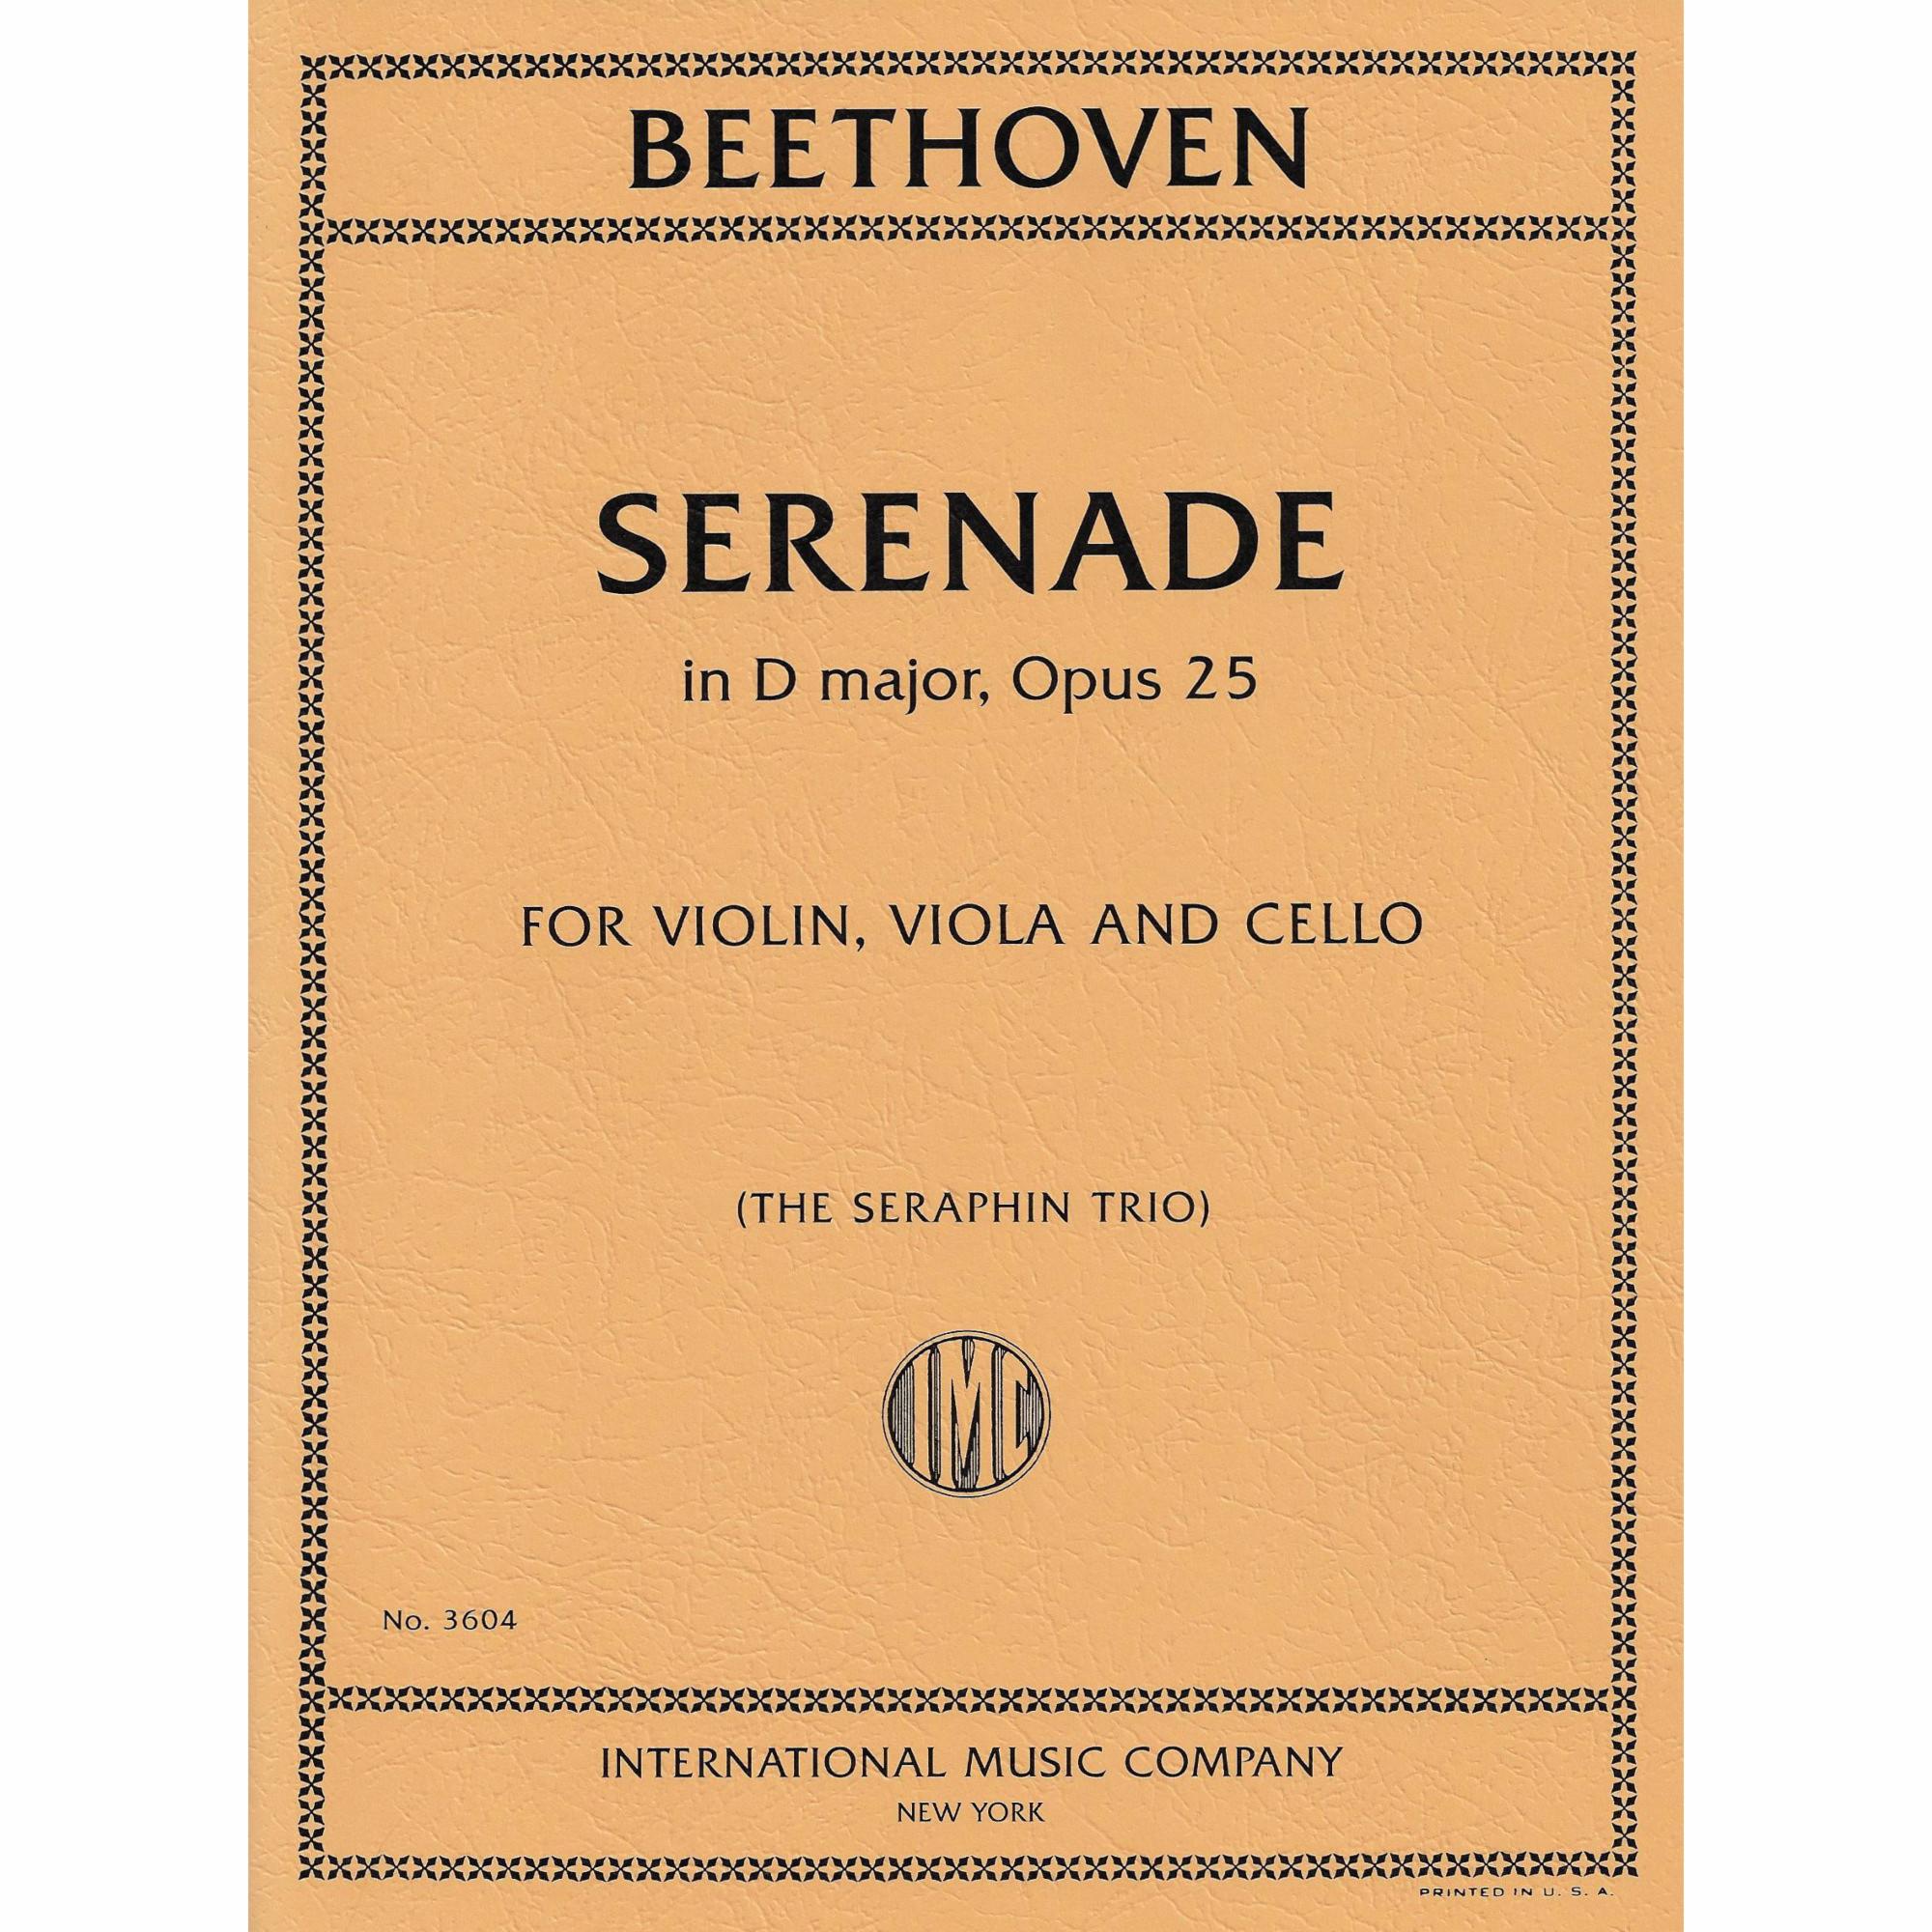 Beethoven -- Serenade in D Major, Op. 25 for Violin, Viola, and Cello